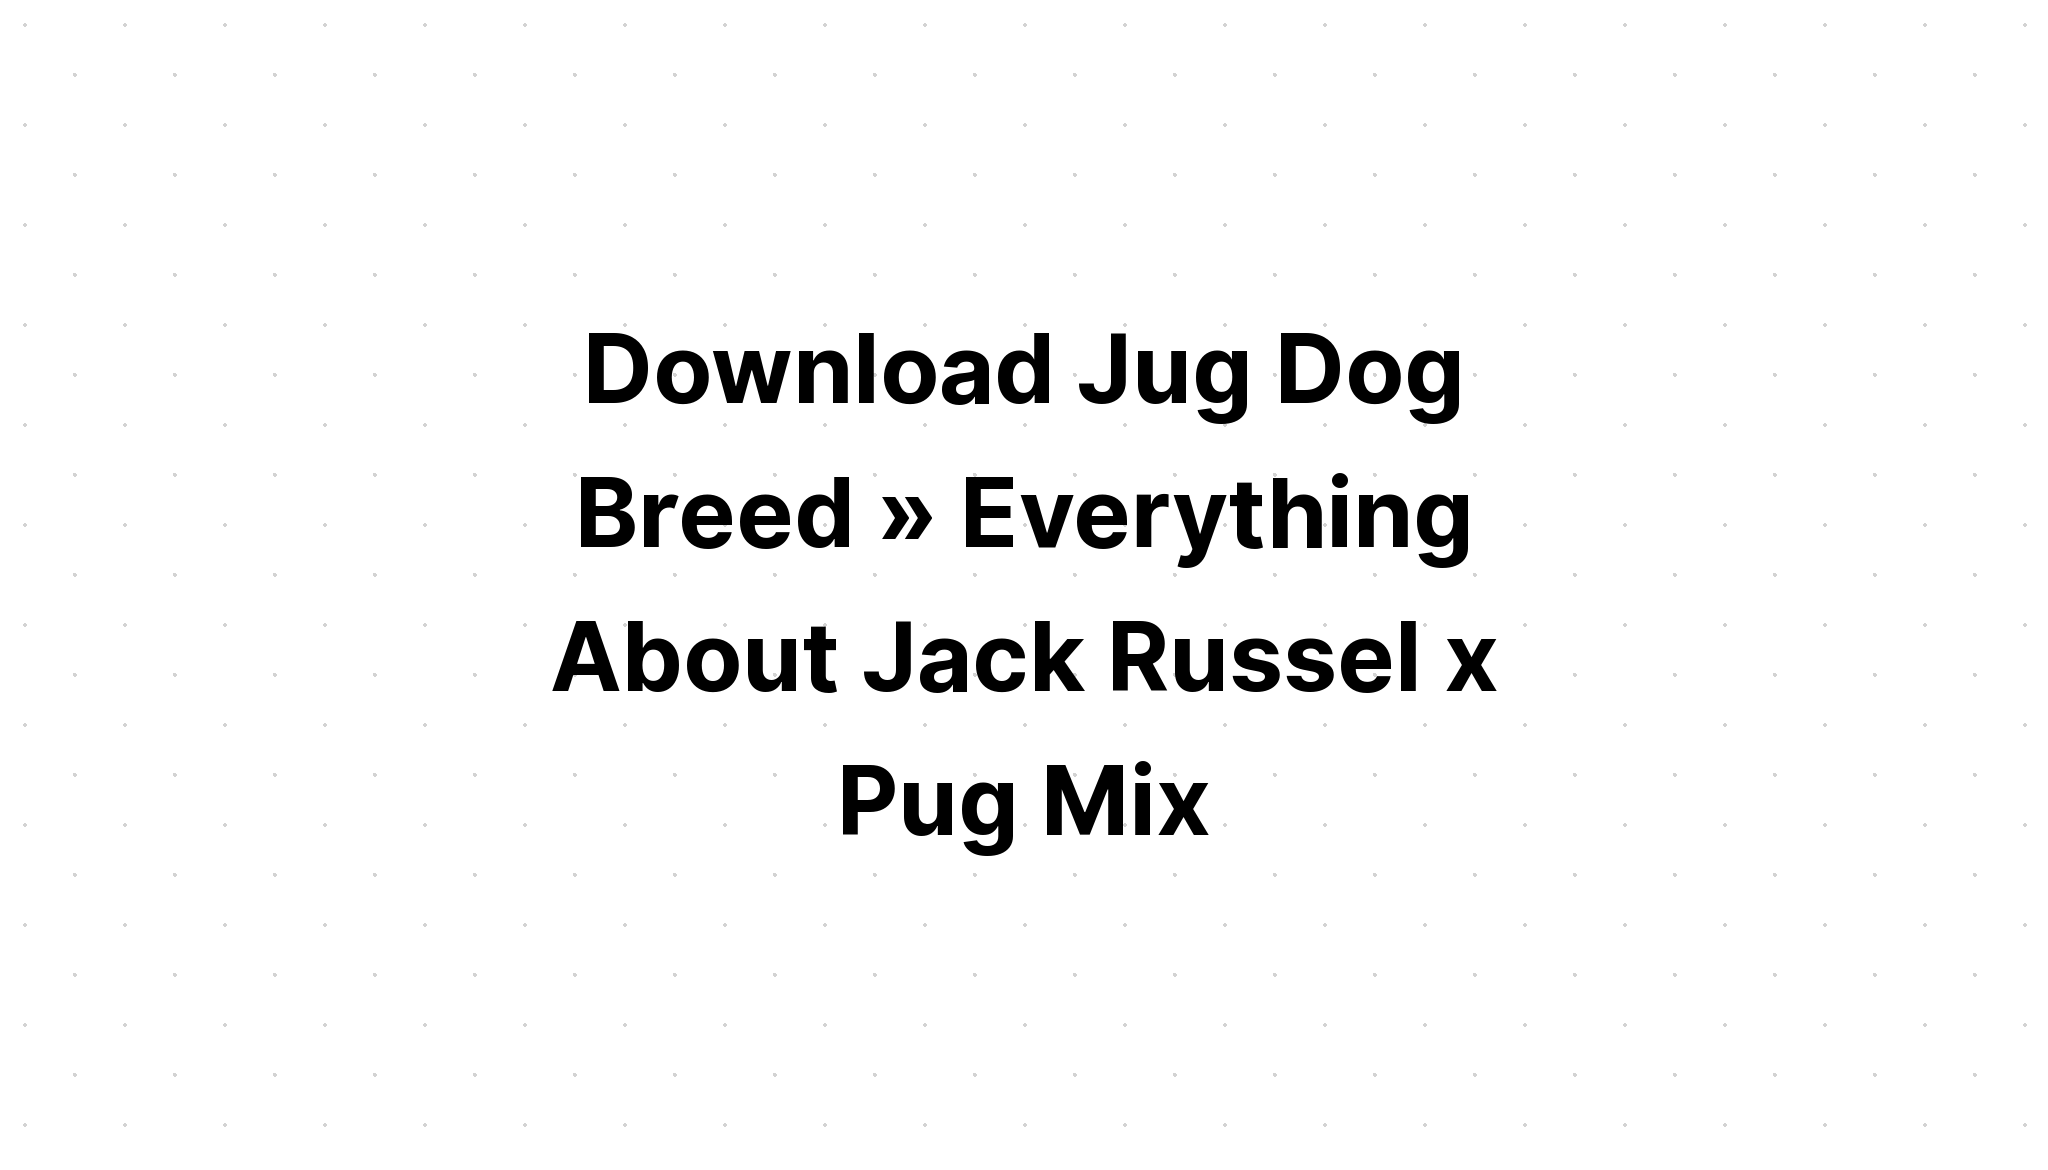 Download Dog SVG File